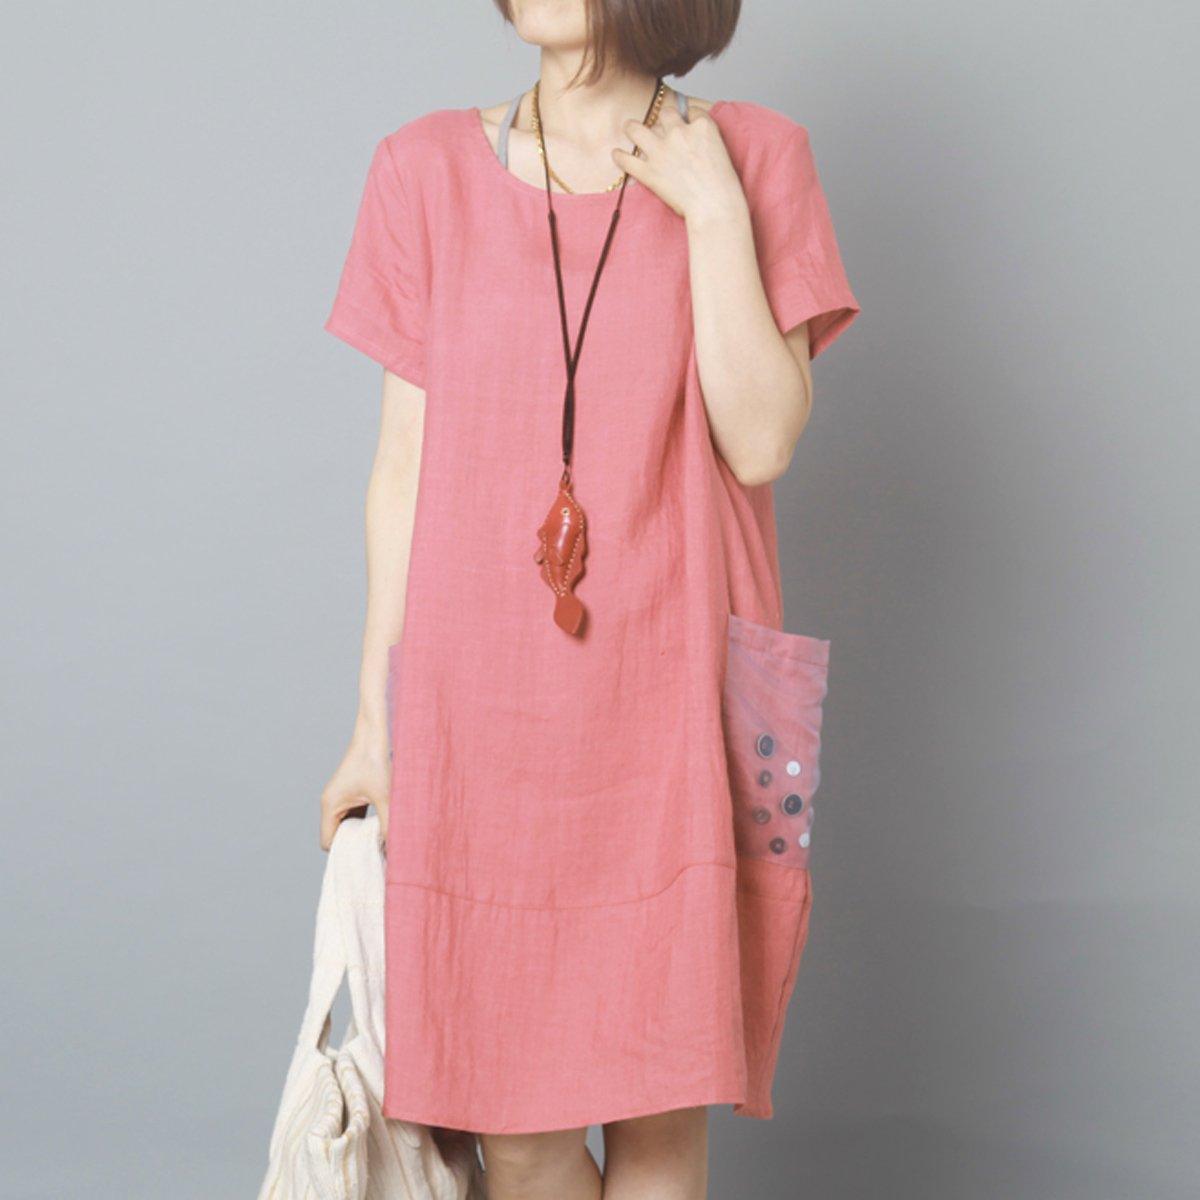 pink summer linen dress baggy shift dress casual daily sundress - Omychic